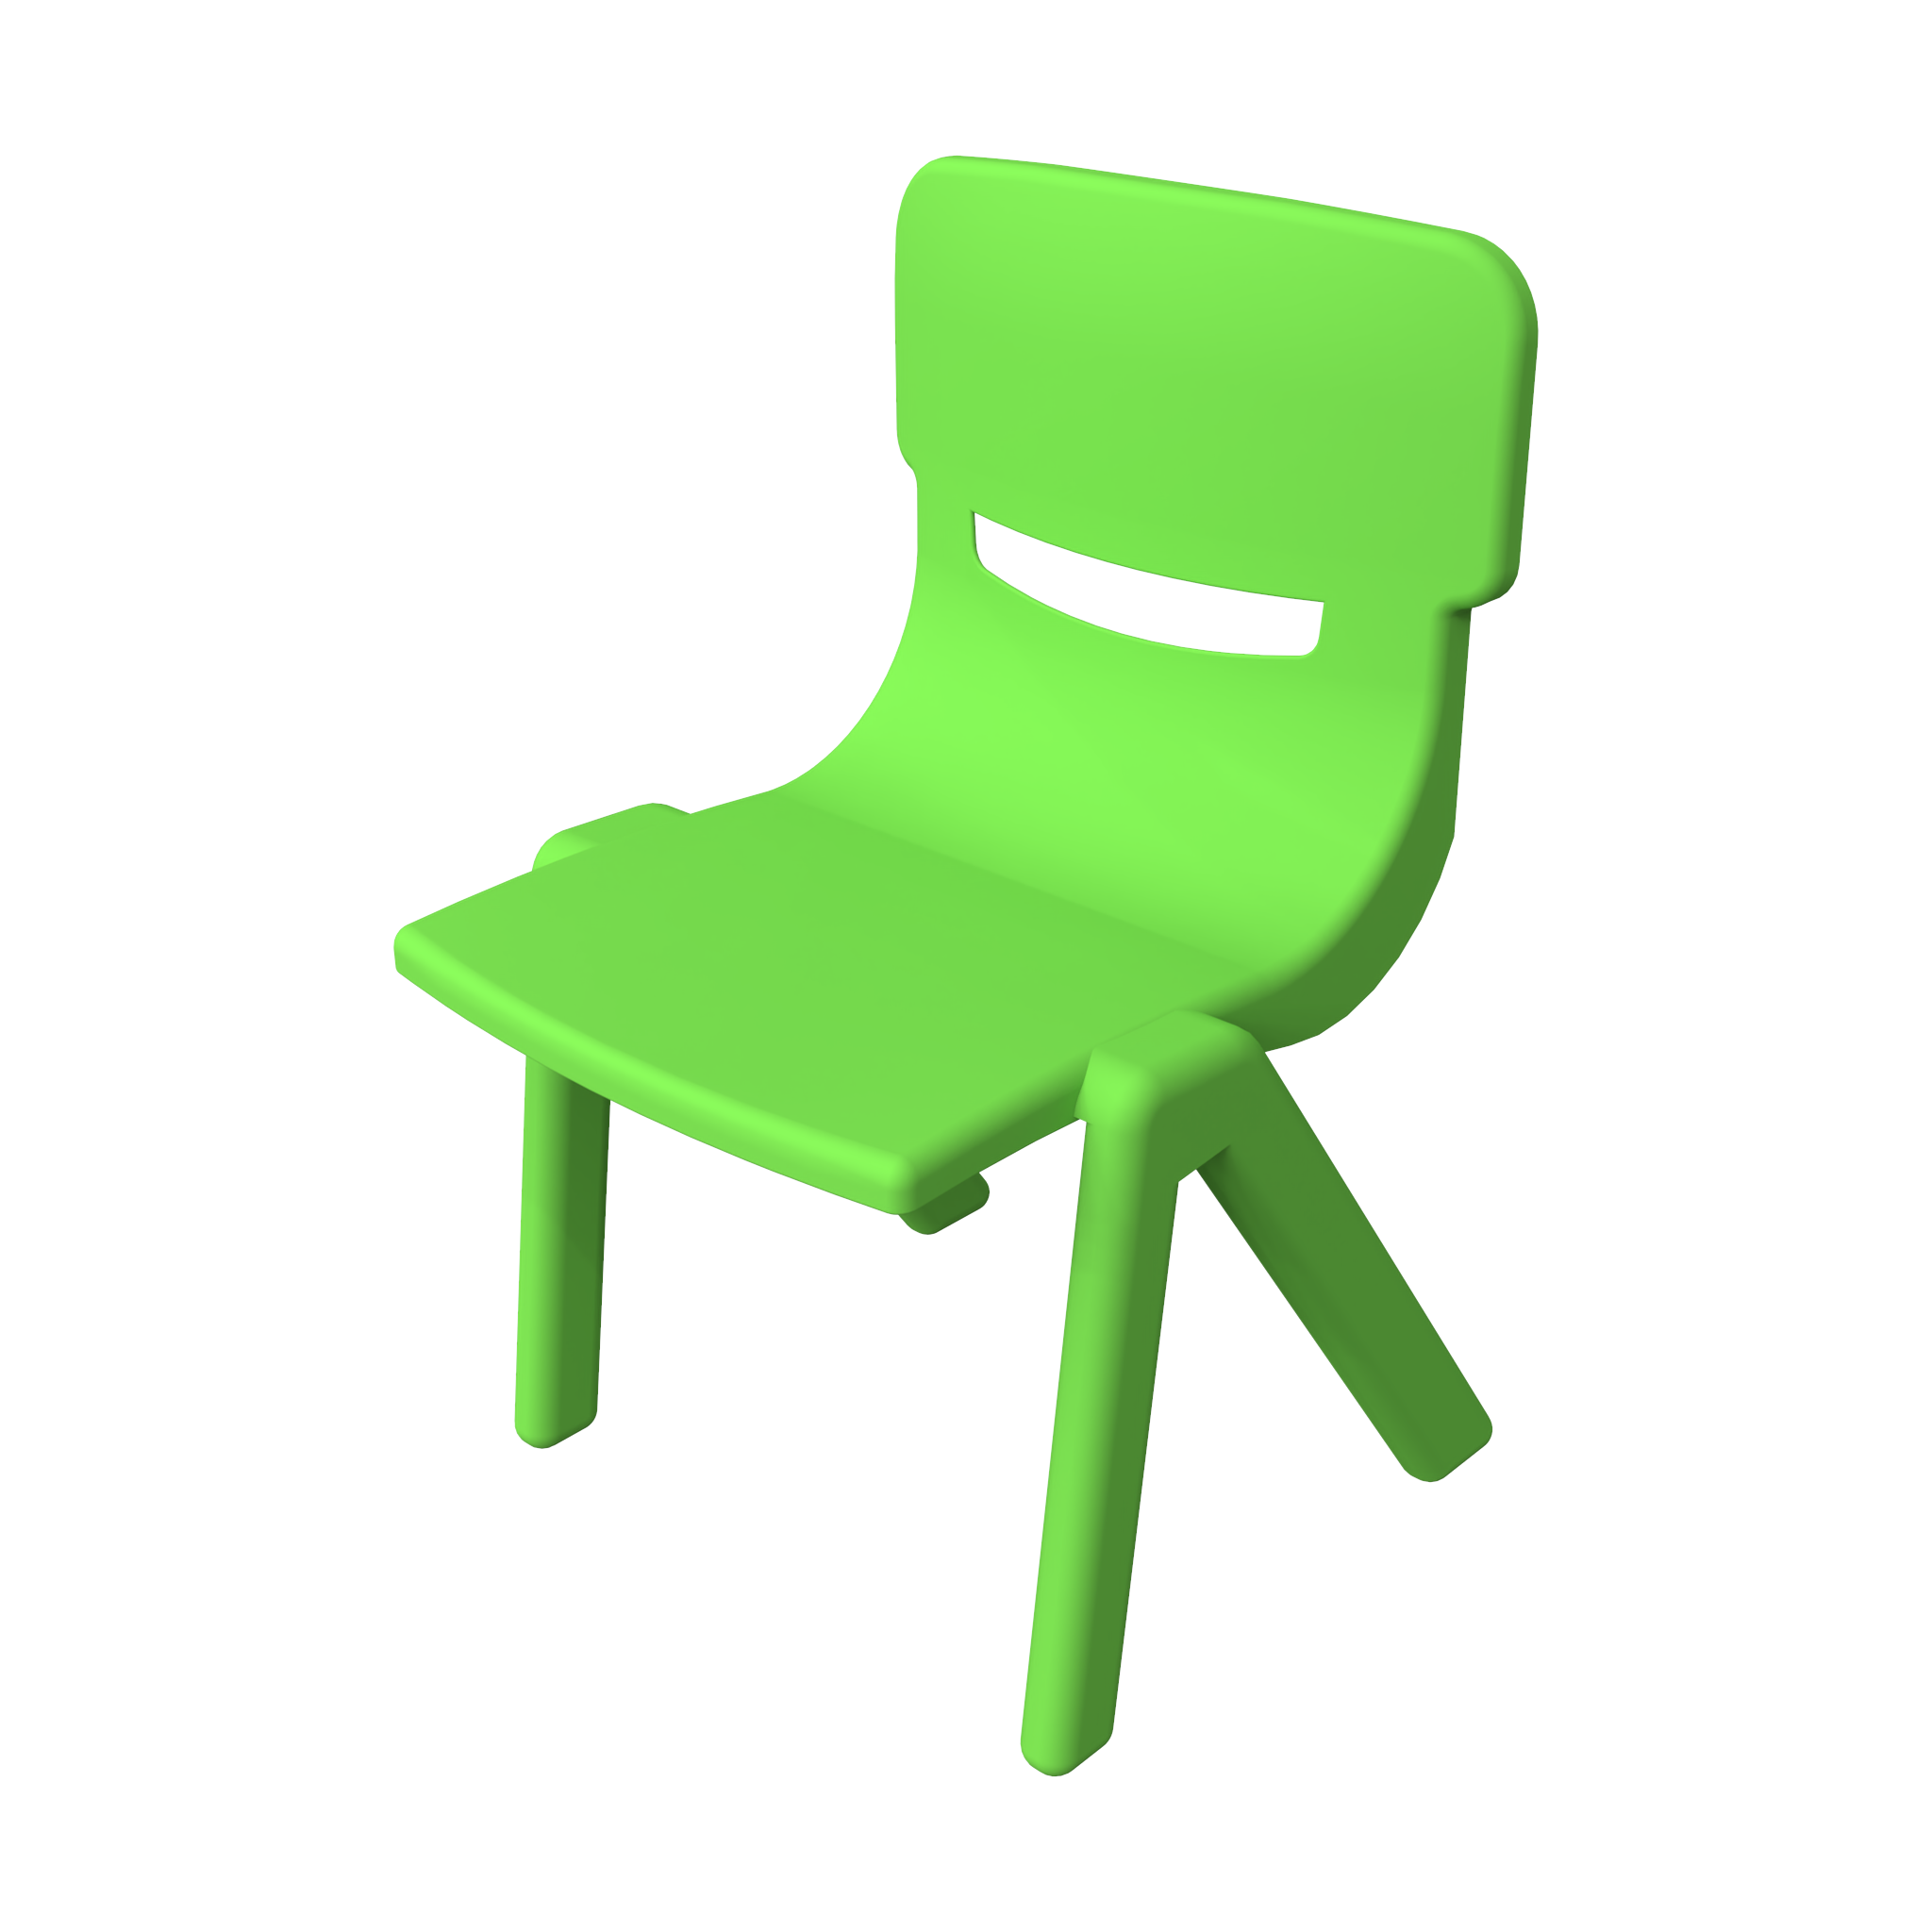 To zdjęcie pokazuje Meble dziecięce Fun chair Green